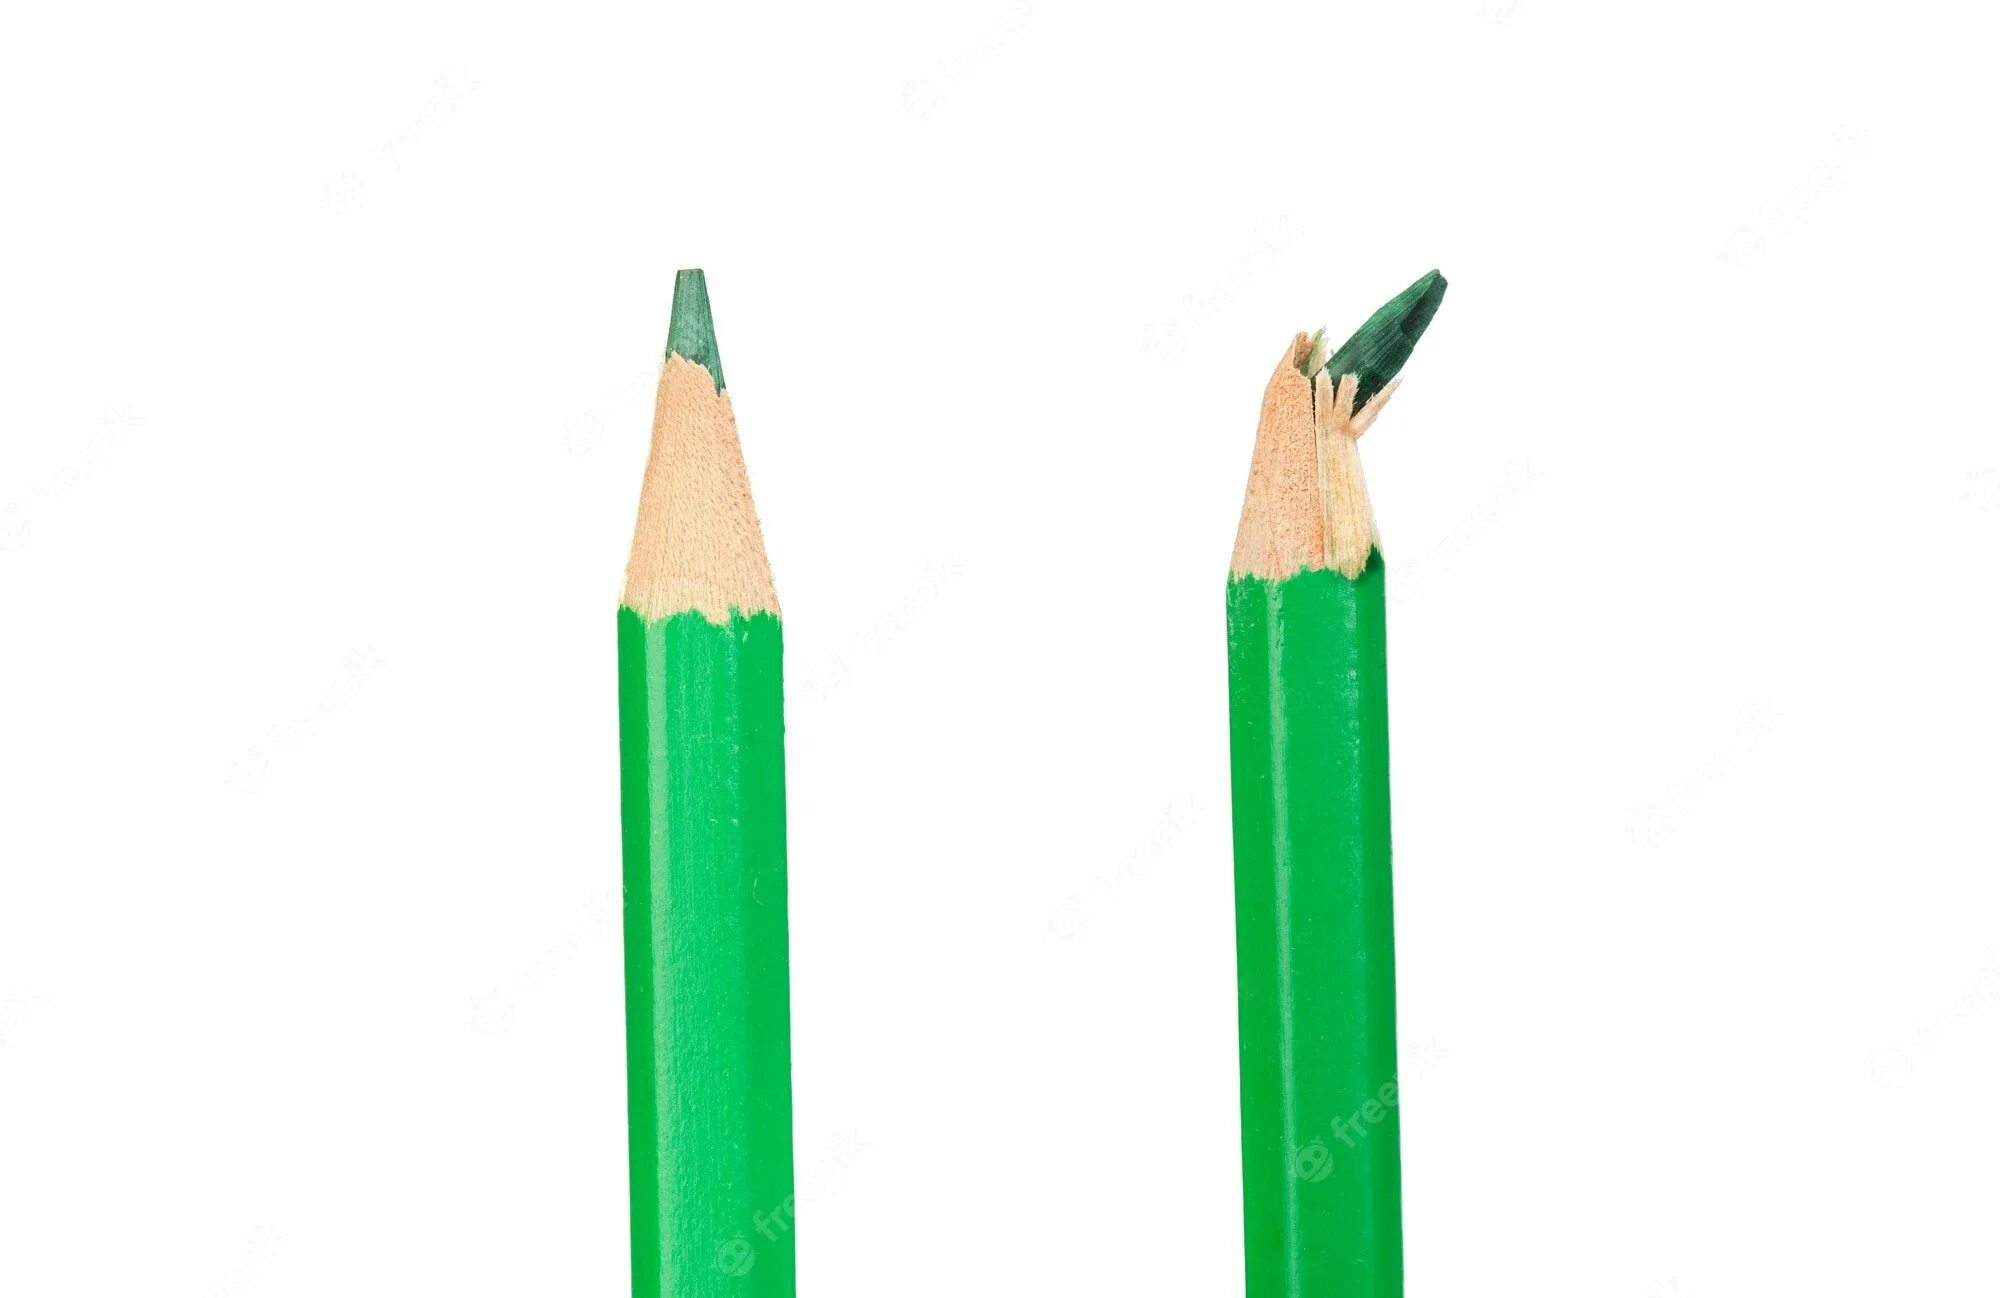 Купить зеленый карандаш. Зеленый карандаш. Два зеленых карандаша. Зеленый карандаш на белом фоне. Зеленый карандаш на прозрачном фоне.